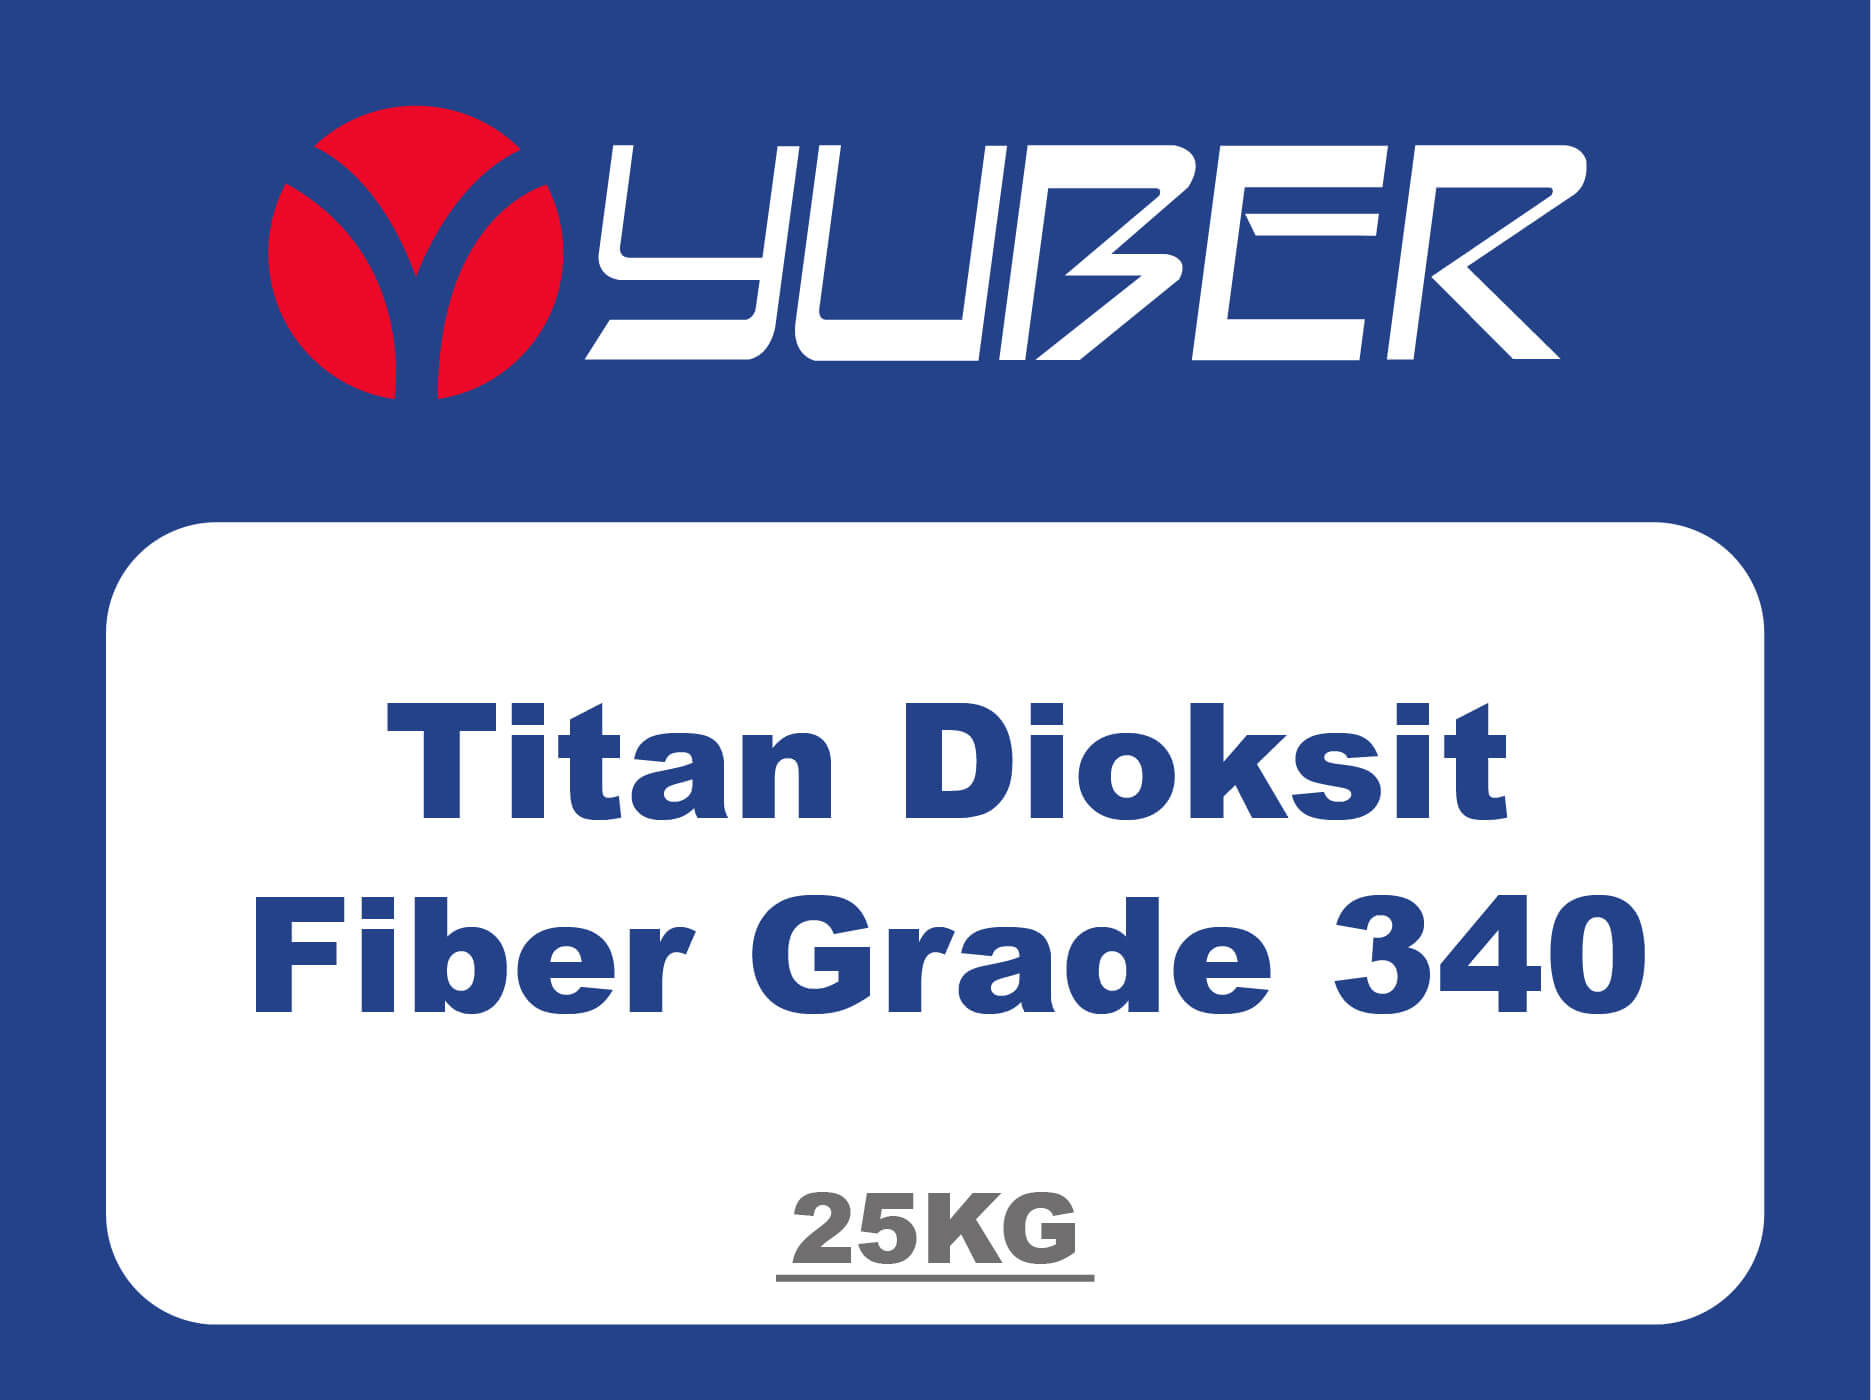 Titan Dioksit Fiber Grade 340 Yuber Kimya